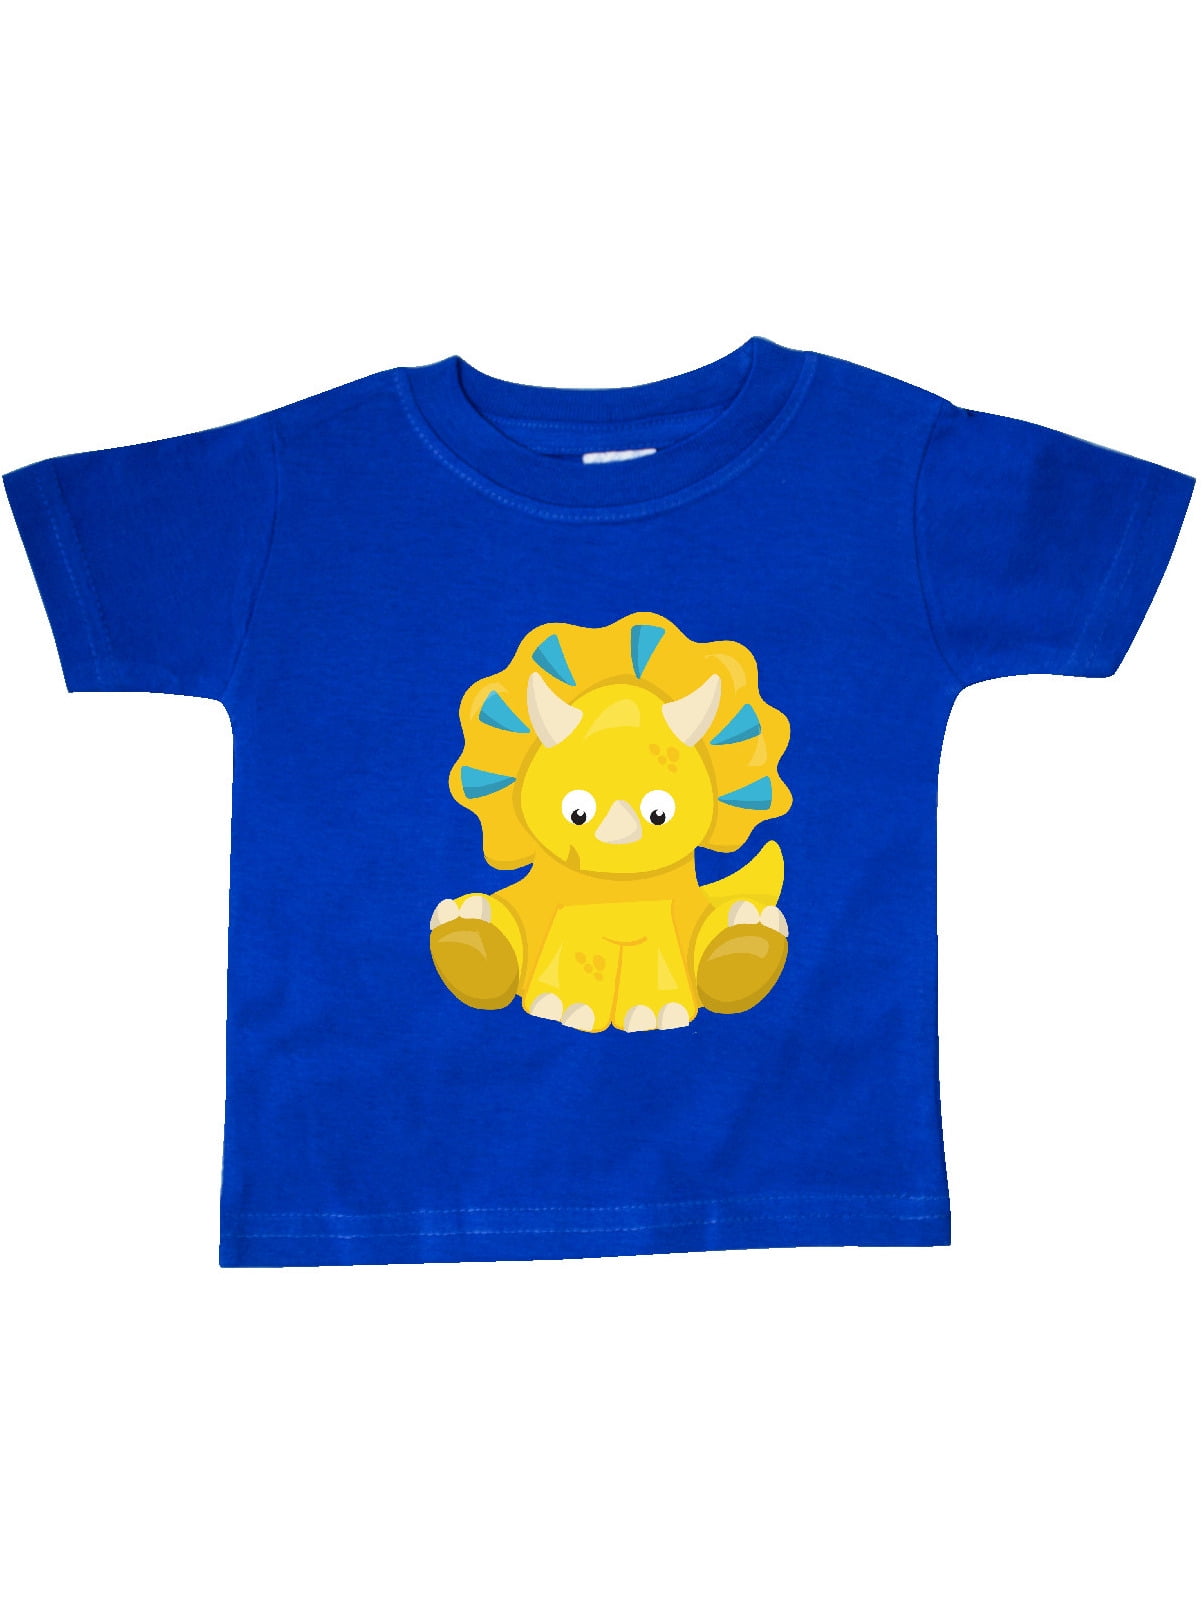 Cute Yellow Dinosaur, Baby Dino, Triceratops Baby T-Shirt - Walmart.com ...